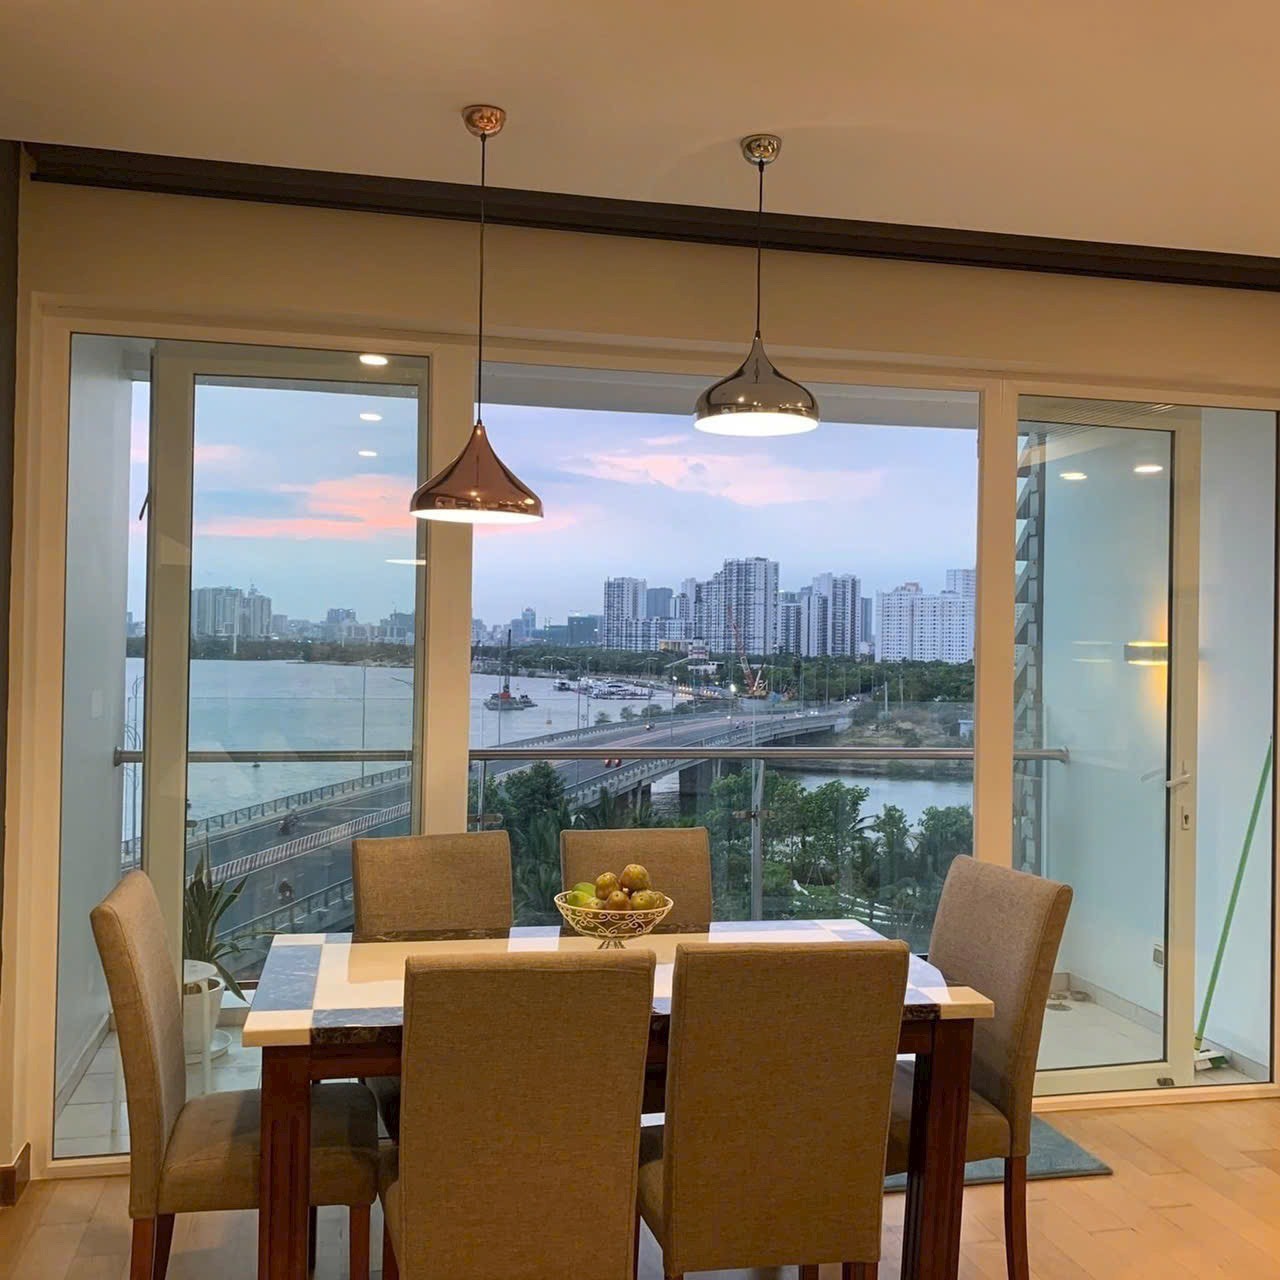 Cần bán căn hộ cao cấp CT1 Riverside Luxury Nha Trang, chuẩn sống cho người hiện đại 6